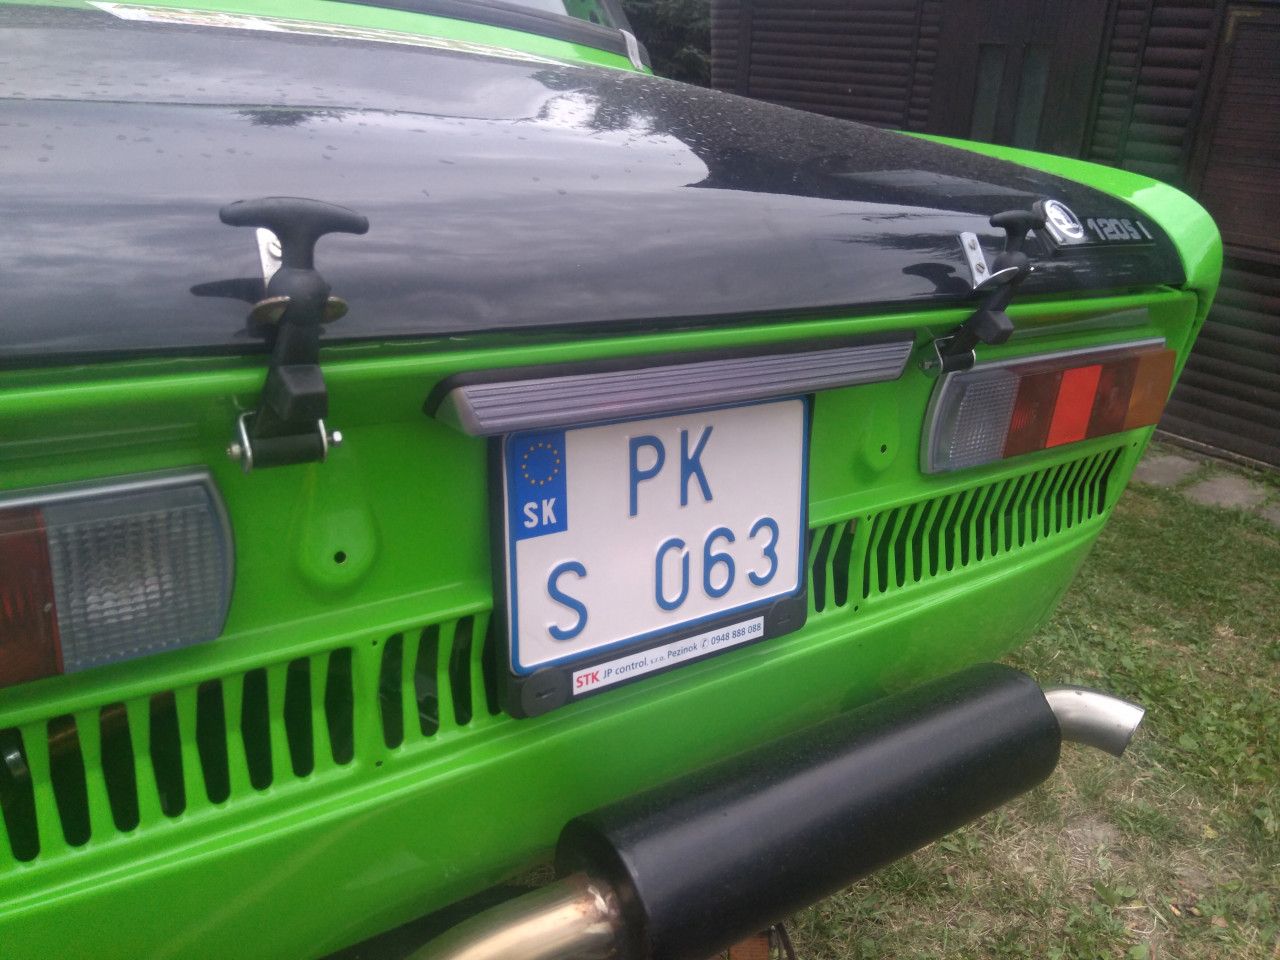 PK S 063